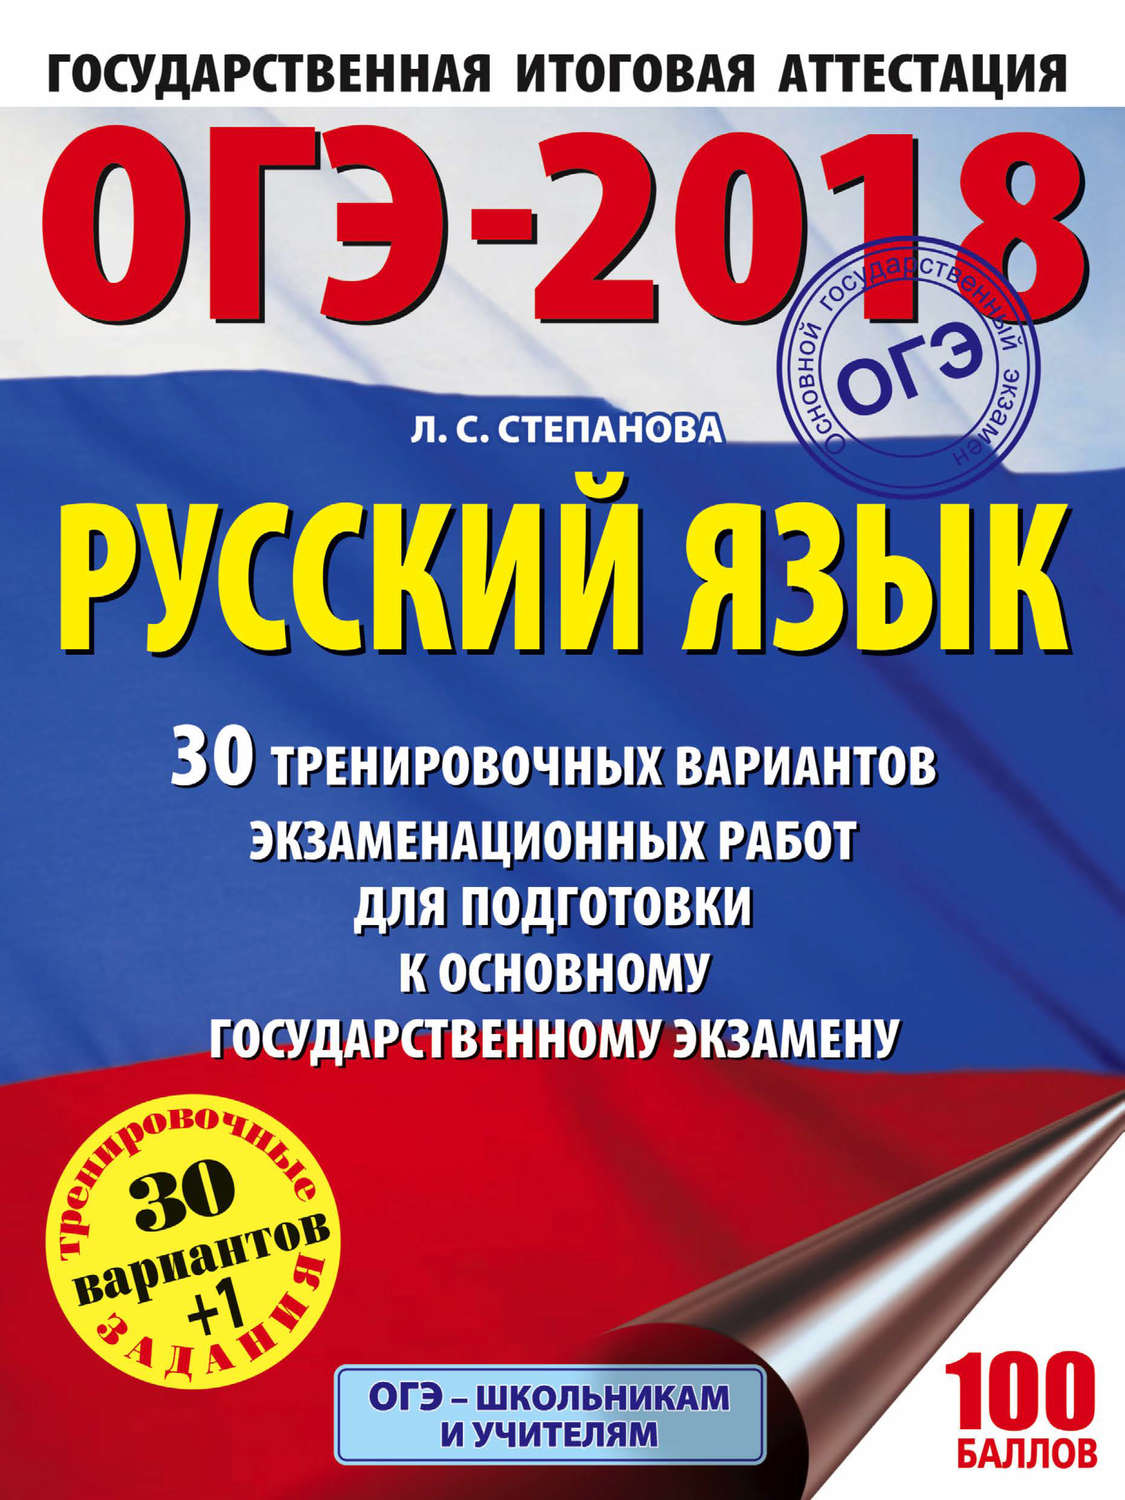 Подготовка к гиа по русскому 2018 9 класс самостоятельно онлайн